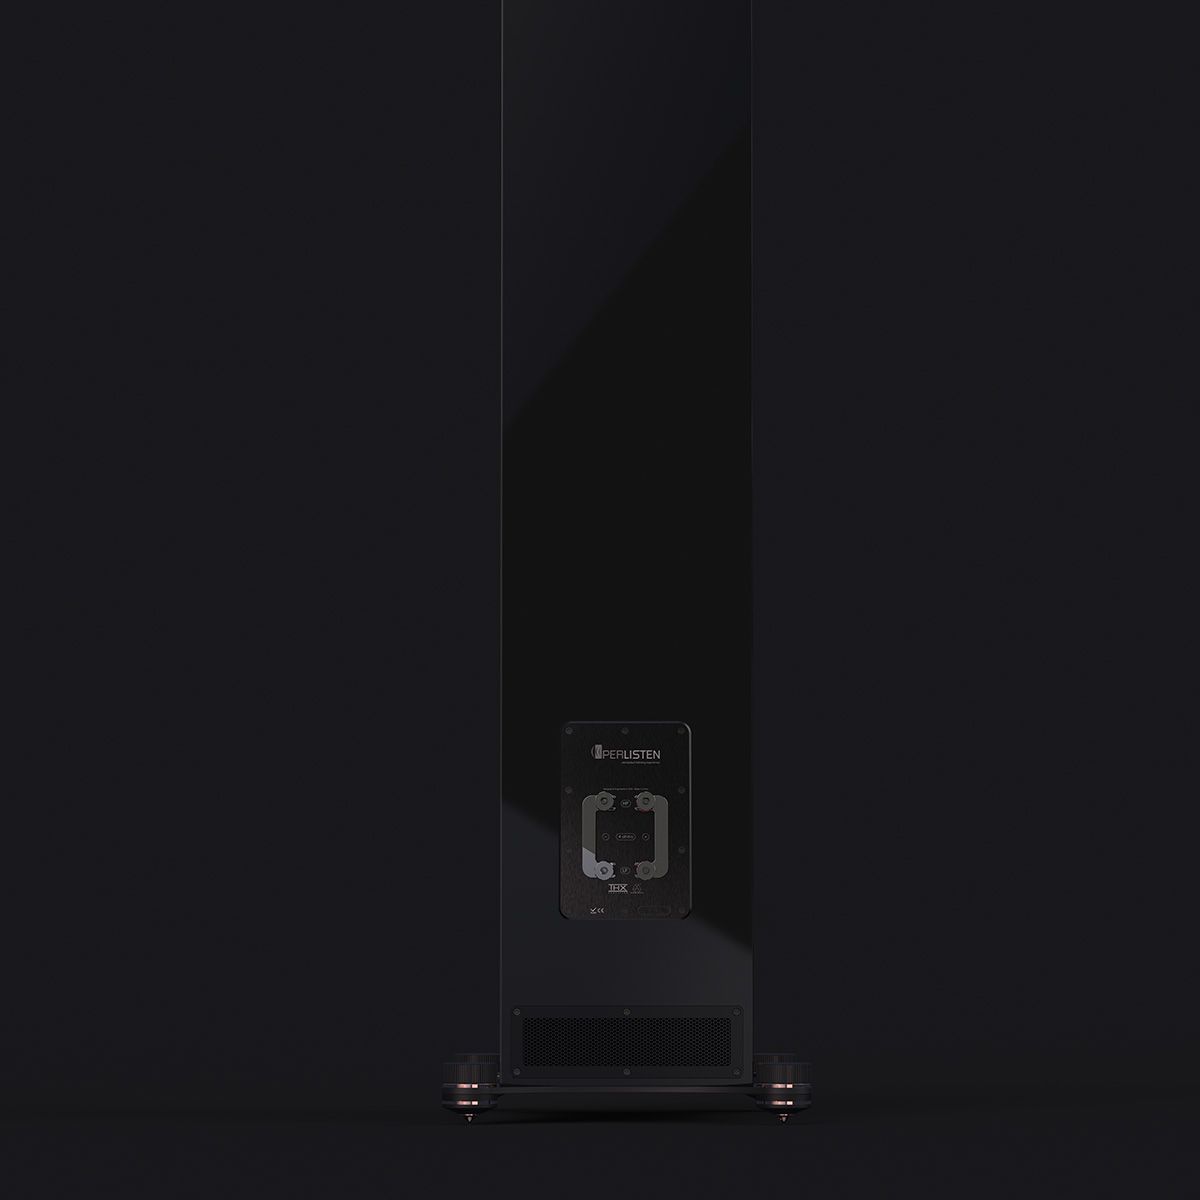 Perlisten R5t Floorstanding Speaker - Each